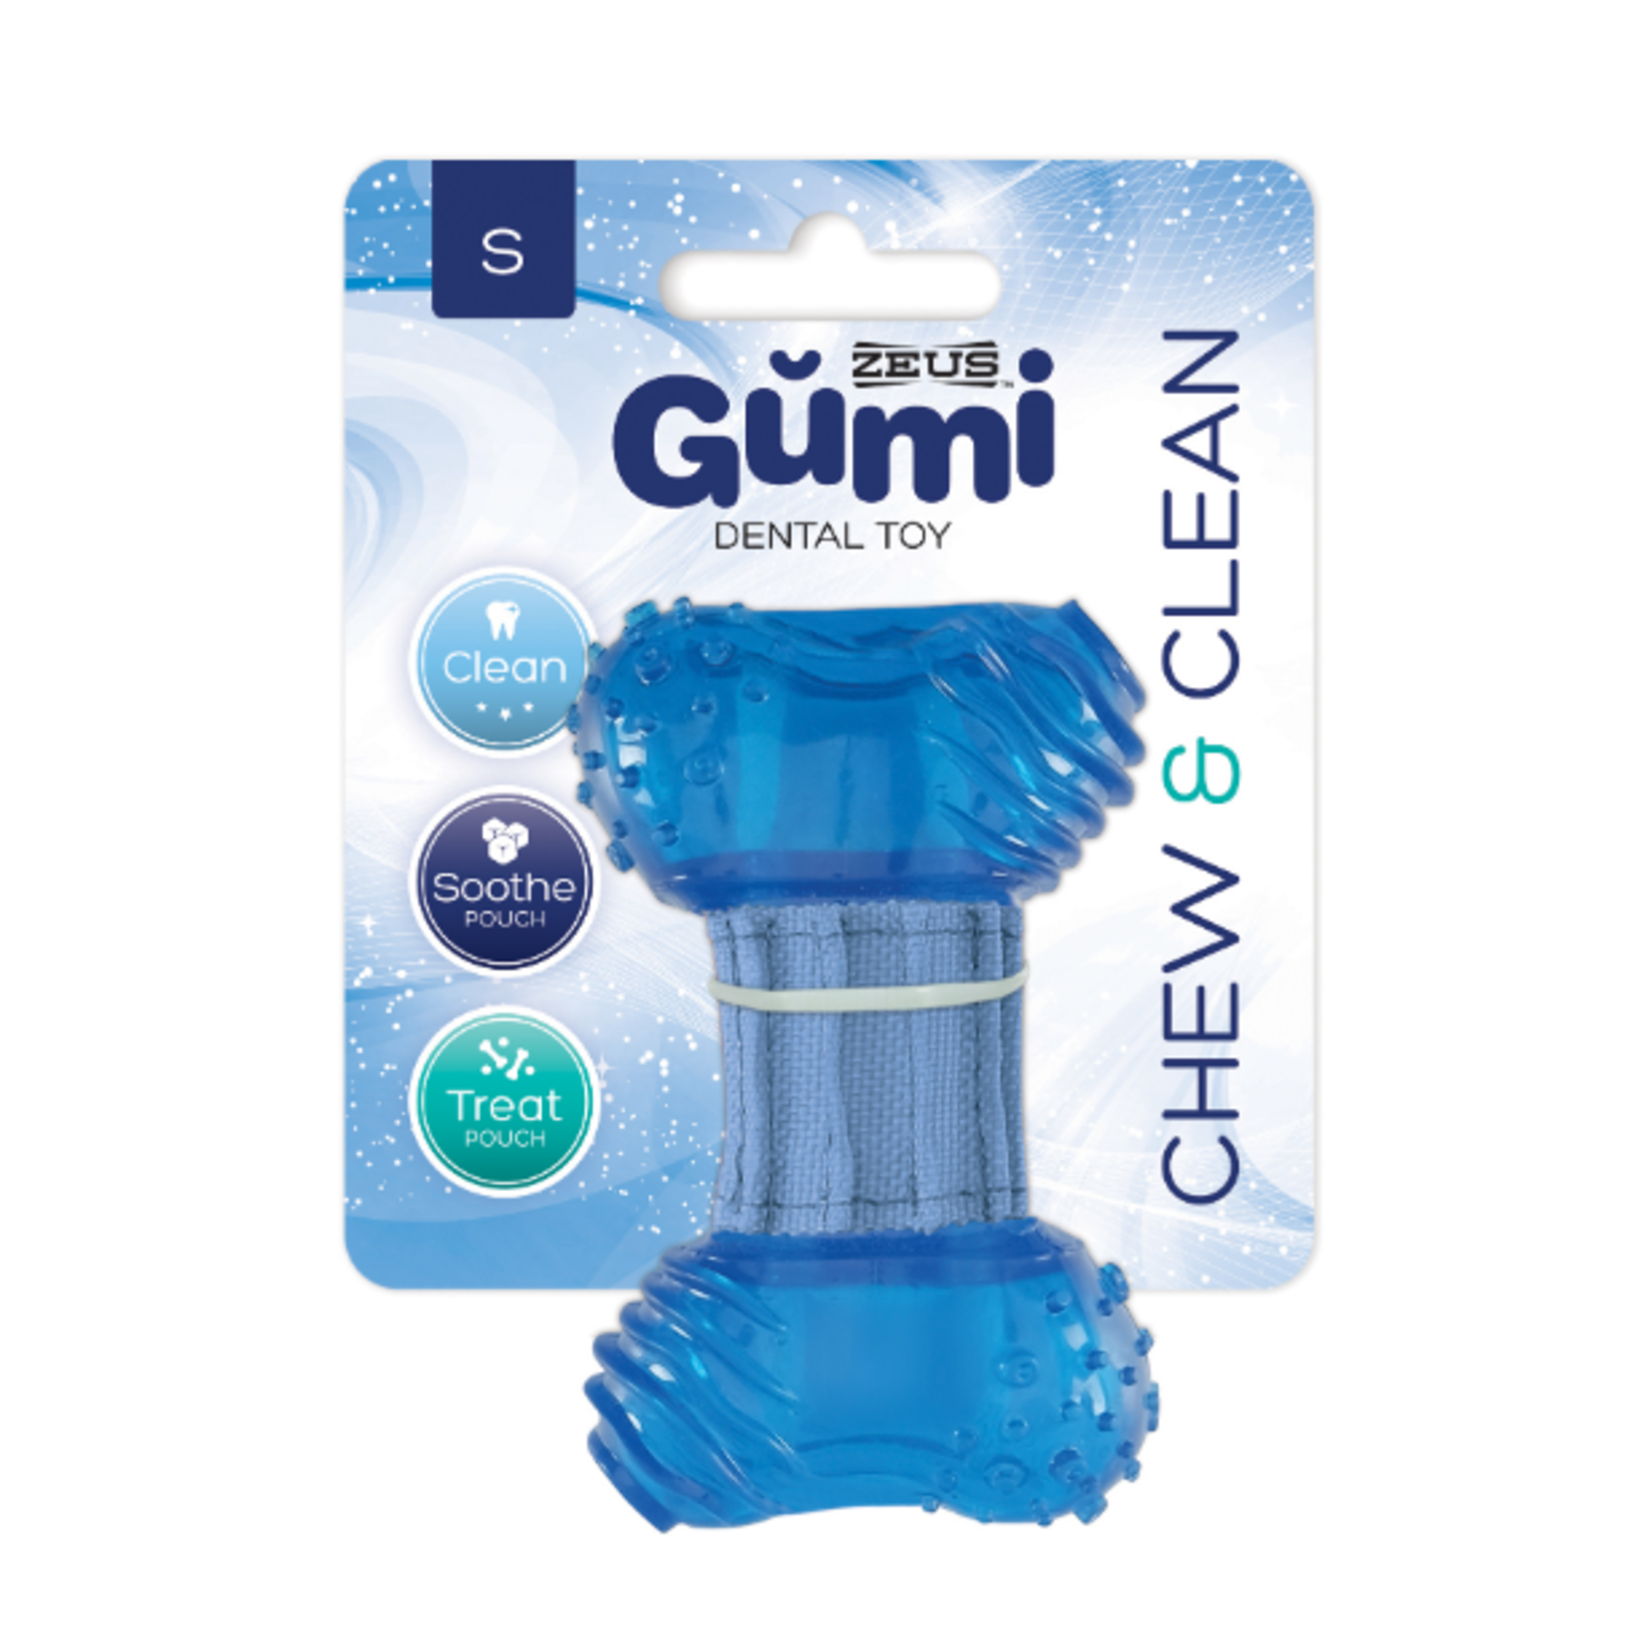 Zeus Gumi Dental Dog Toy - Chew & Clean